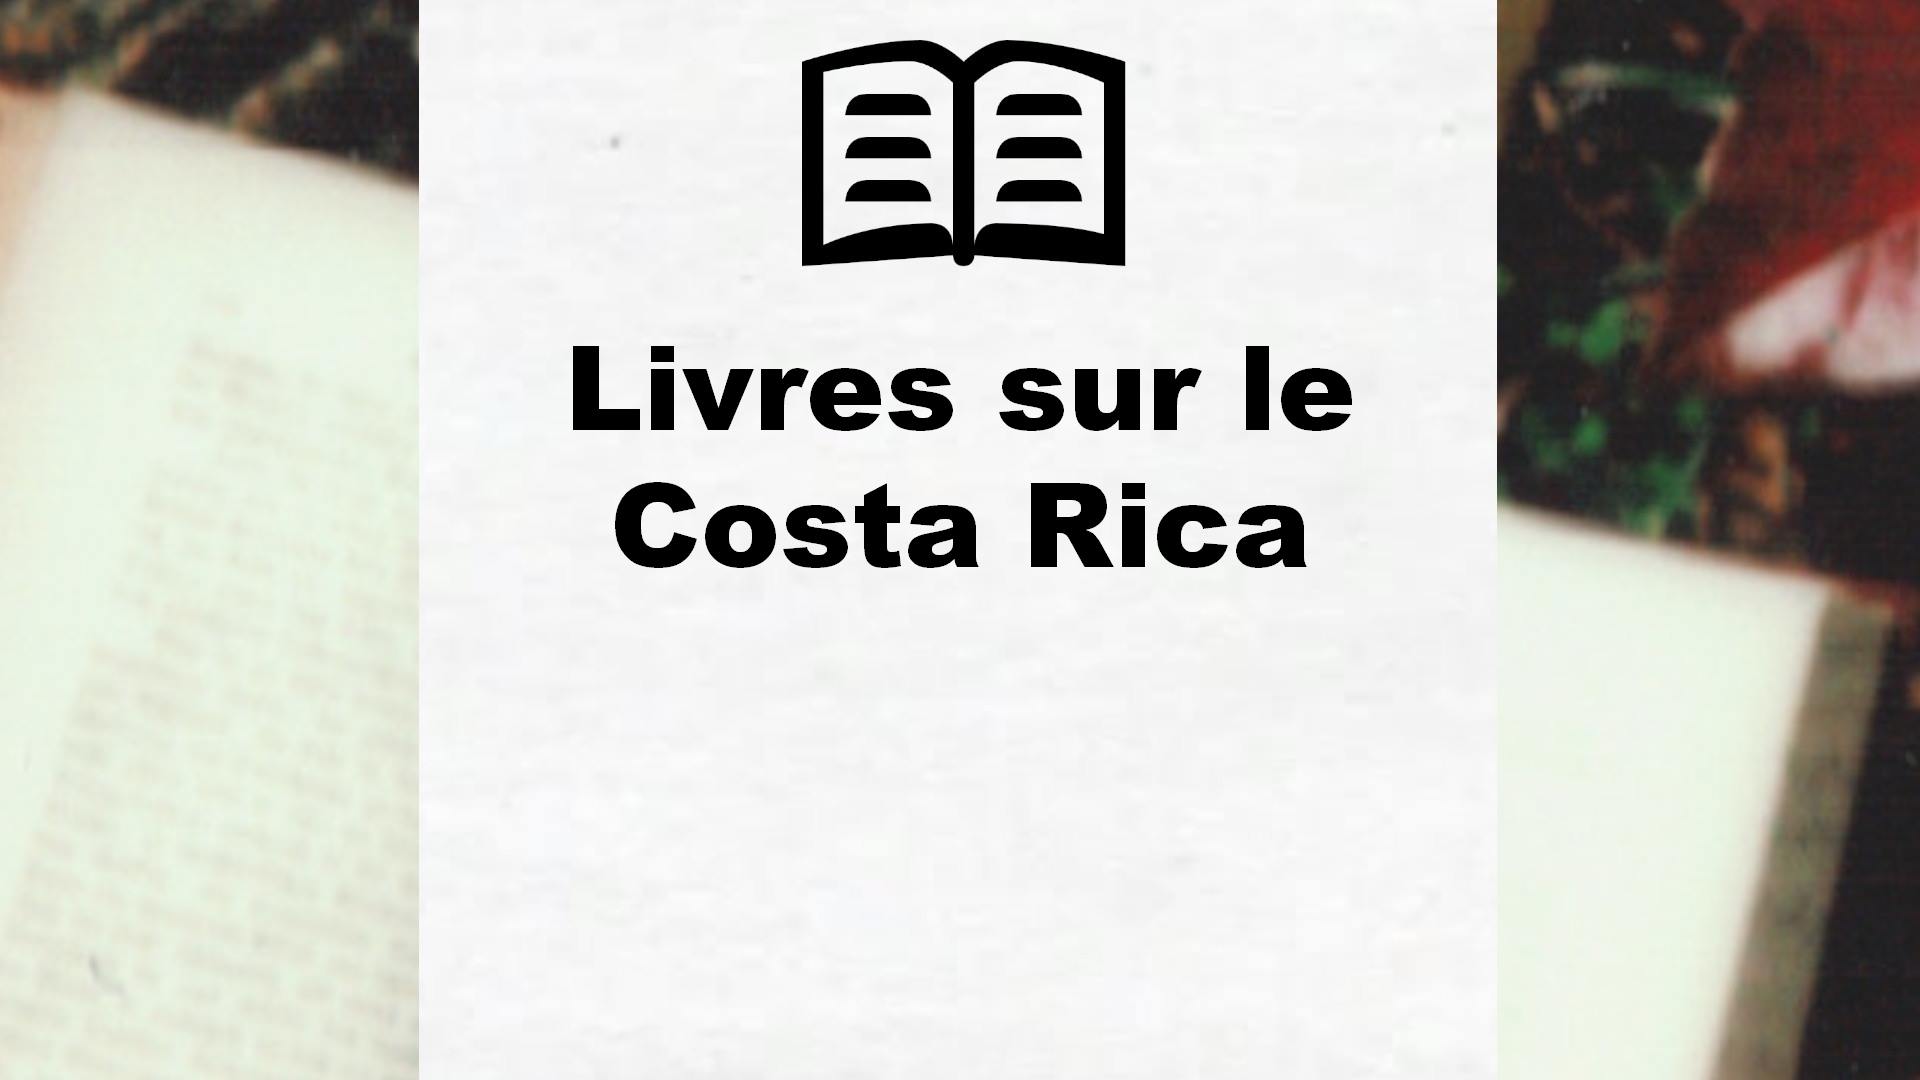 Livres sur le Costa Rica